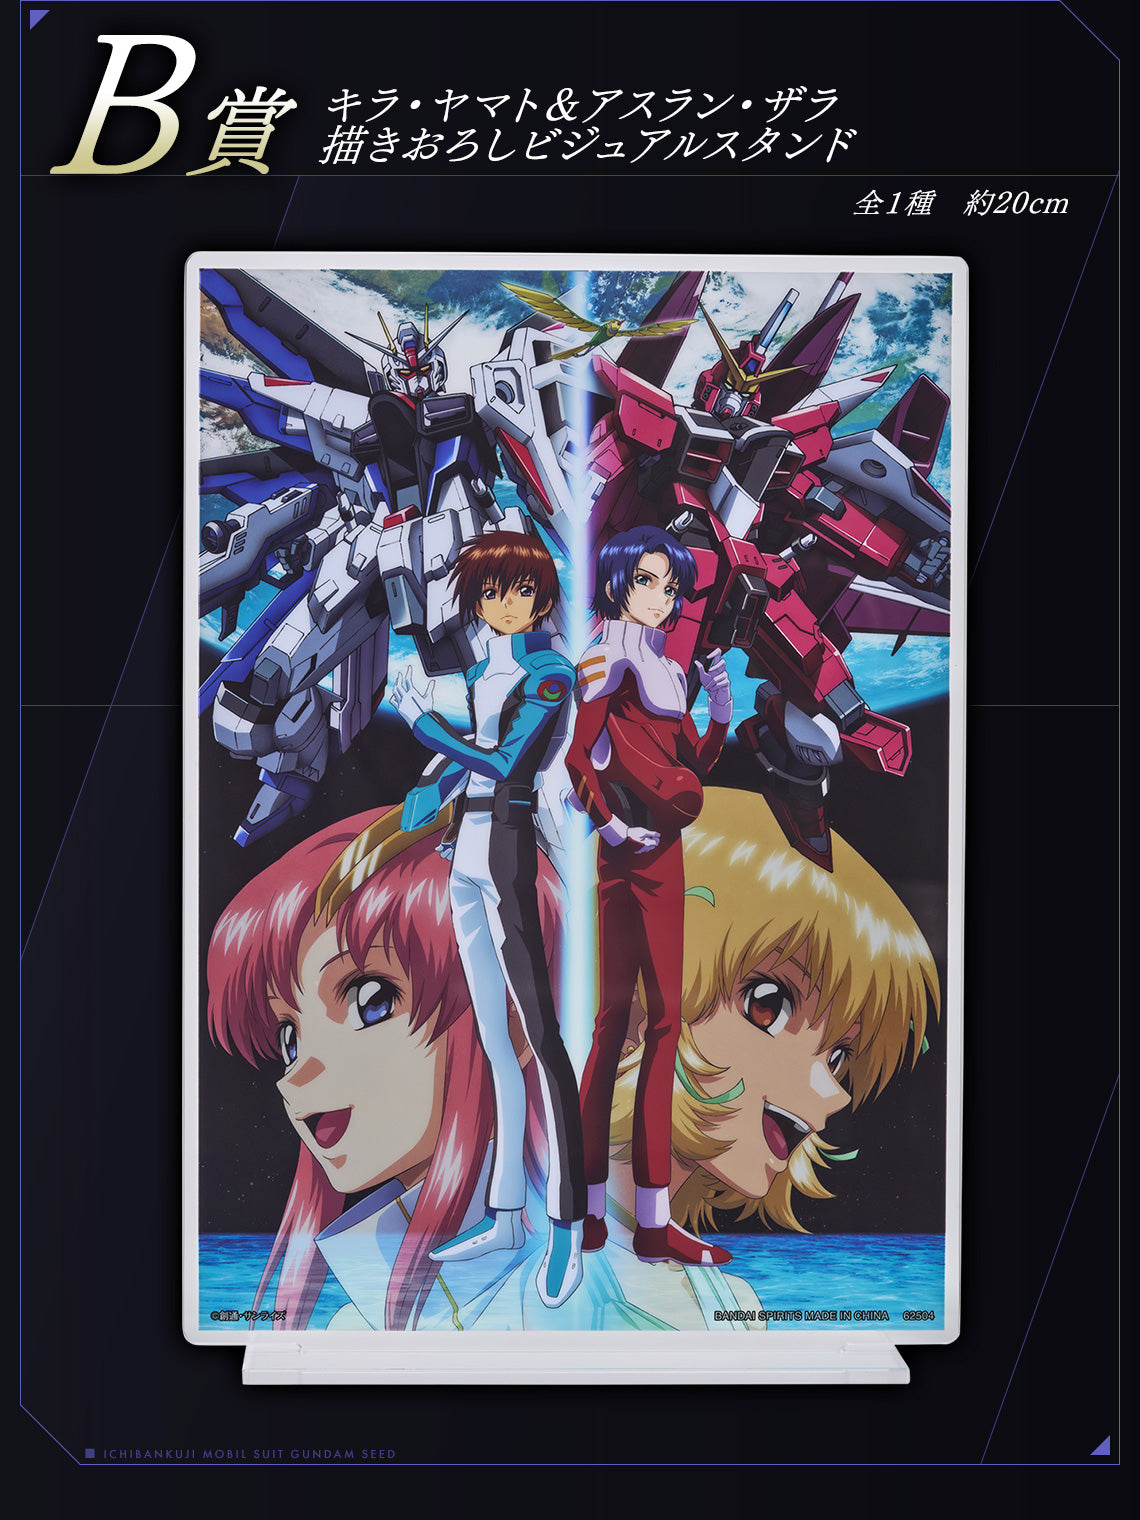 (Whole Set 80tix) Ichiban Kuji Mobile Suit Gundam Seed